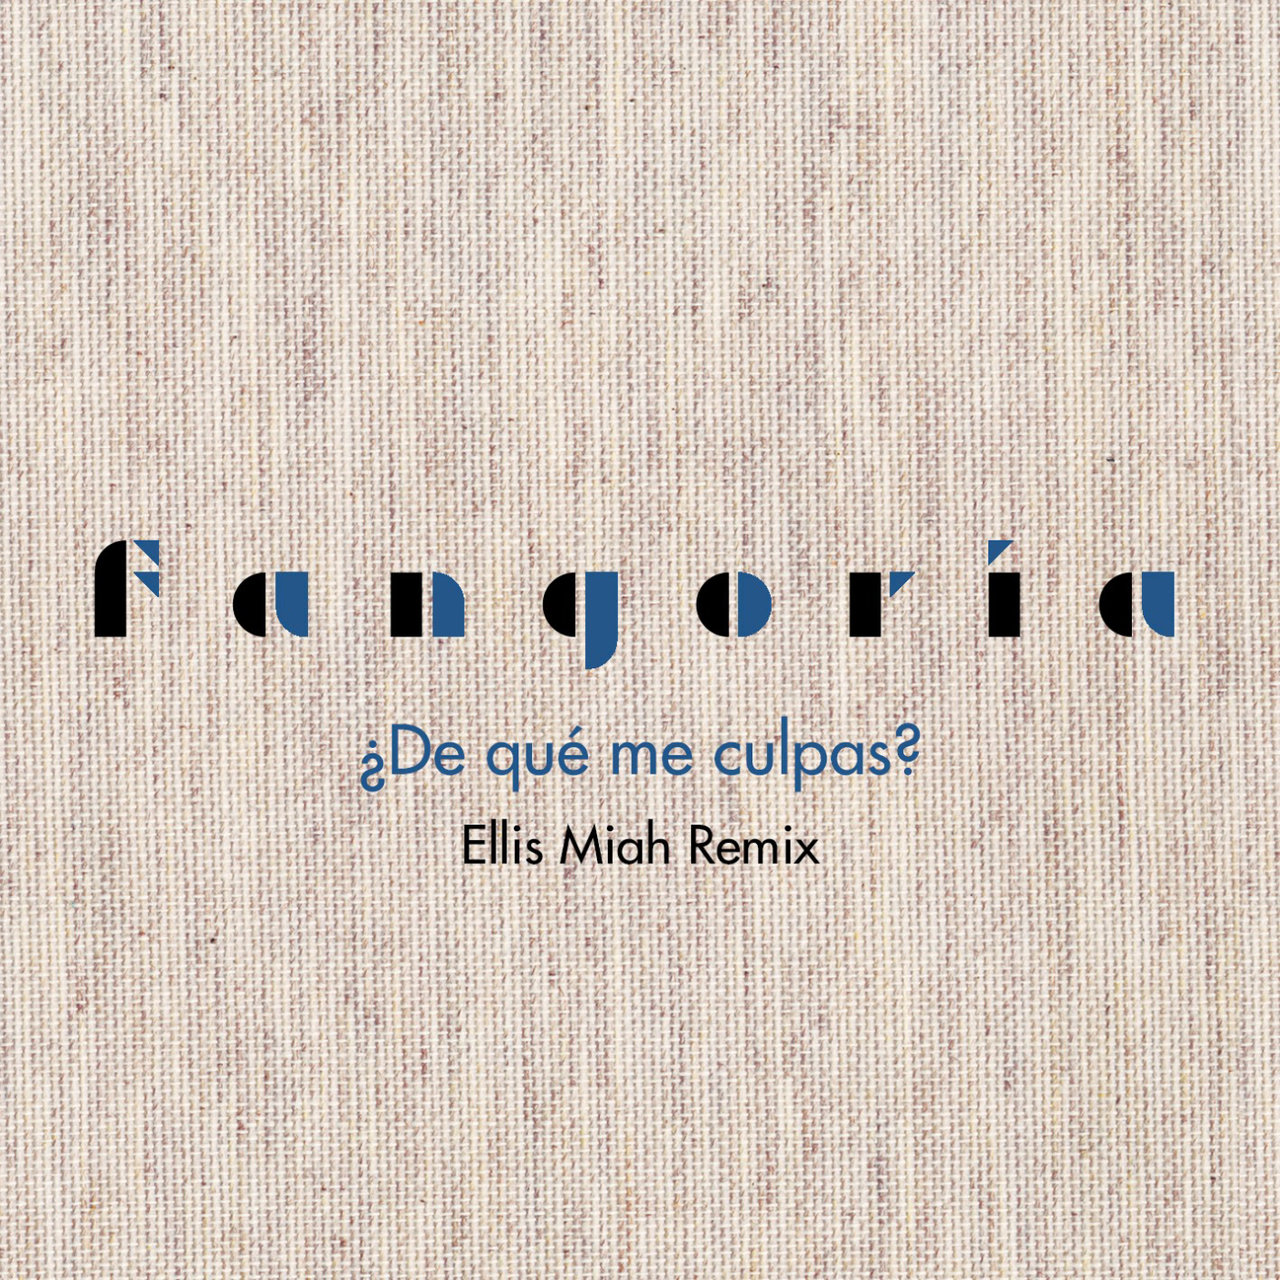 Fangoria — ¿De qué me culpas? (Ellis Miah Remix) cover artwork